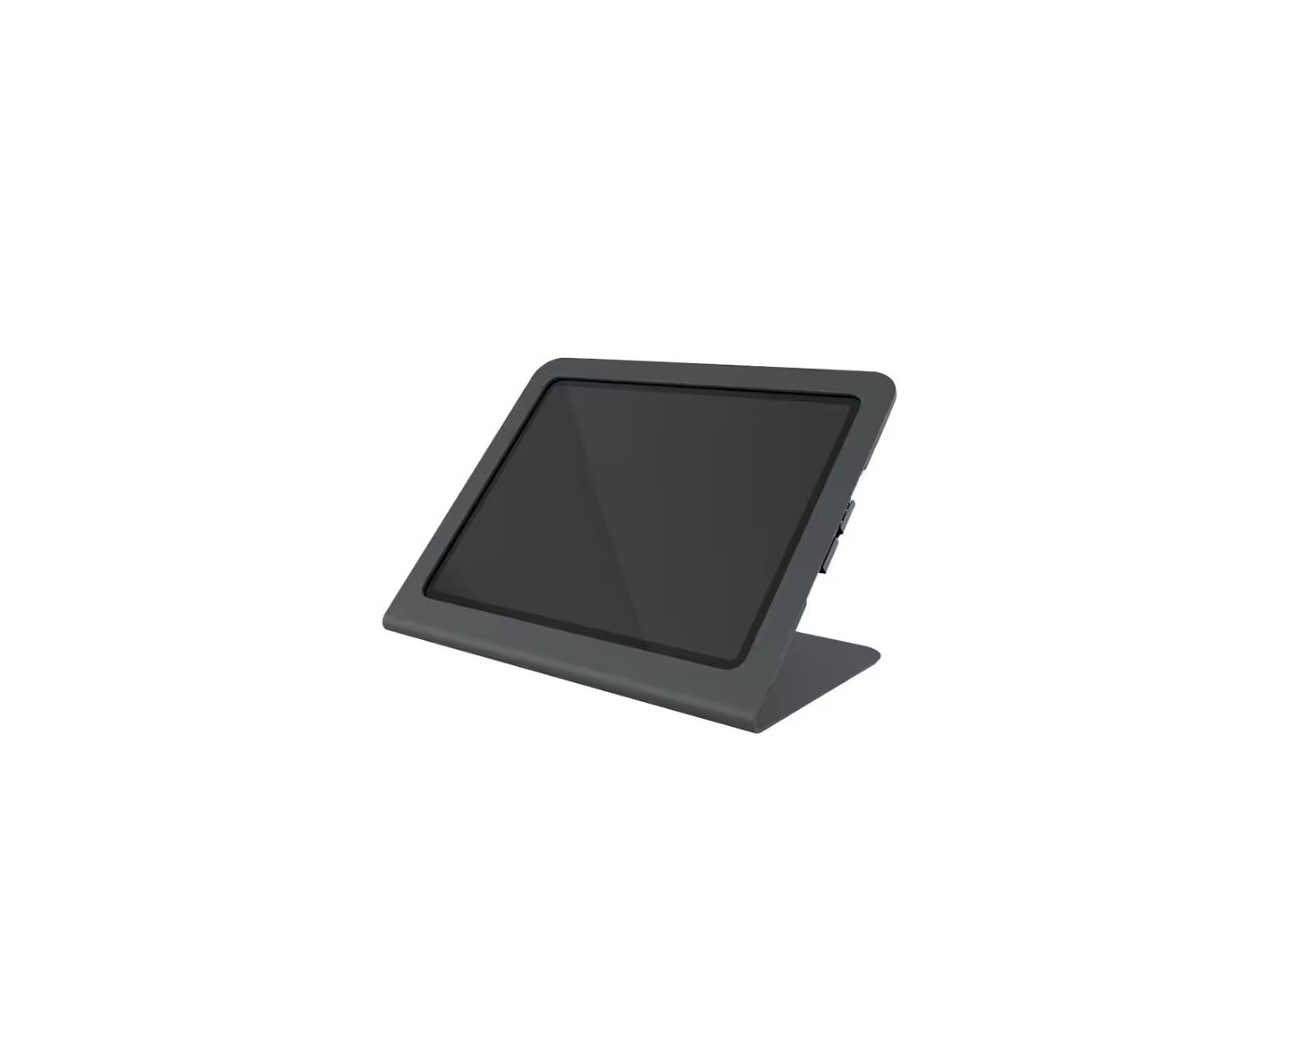 Hecklerdesign Heckler Windfall Stand For Tablet Black Gray H549-BG